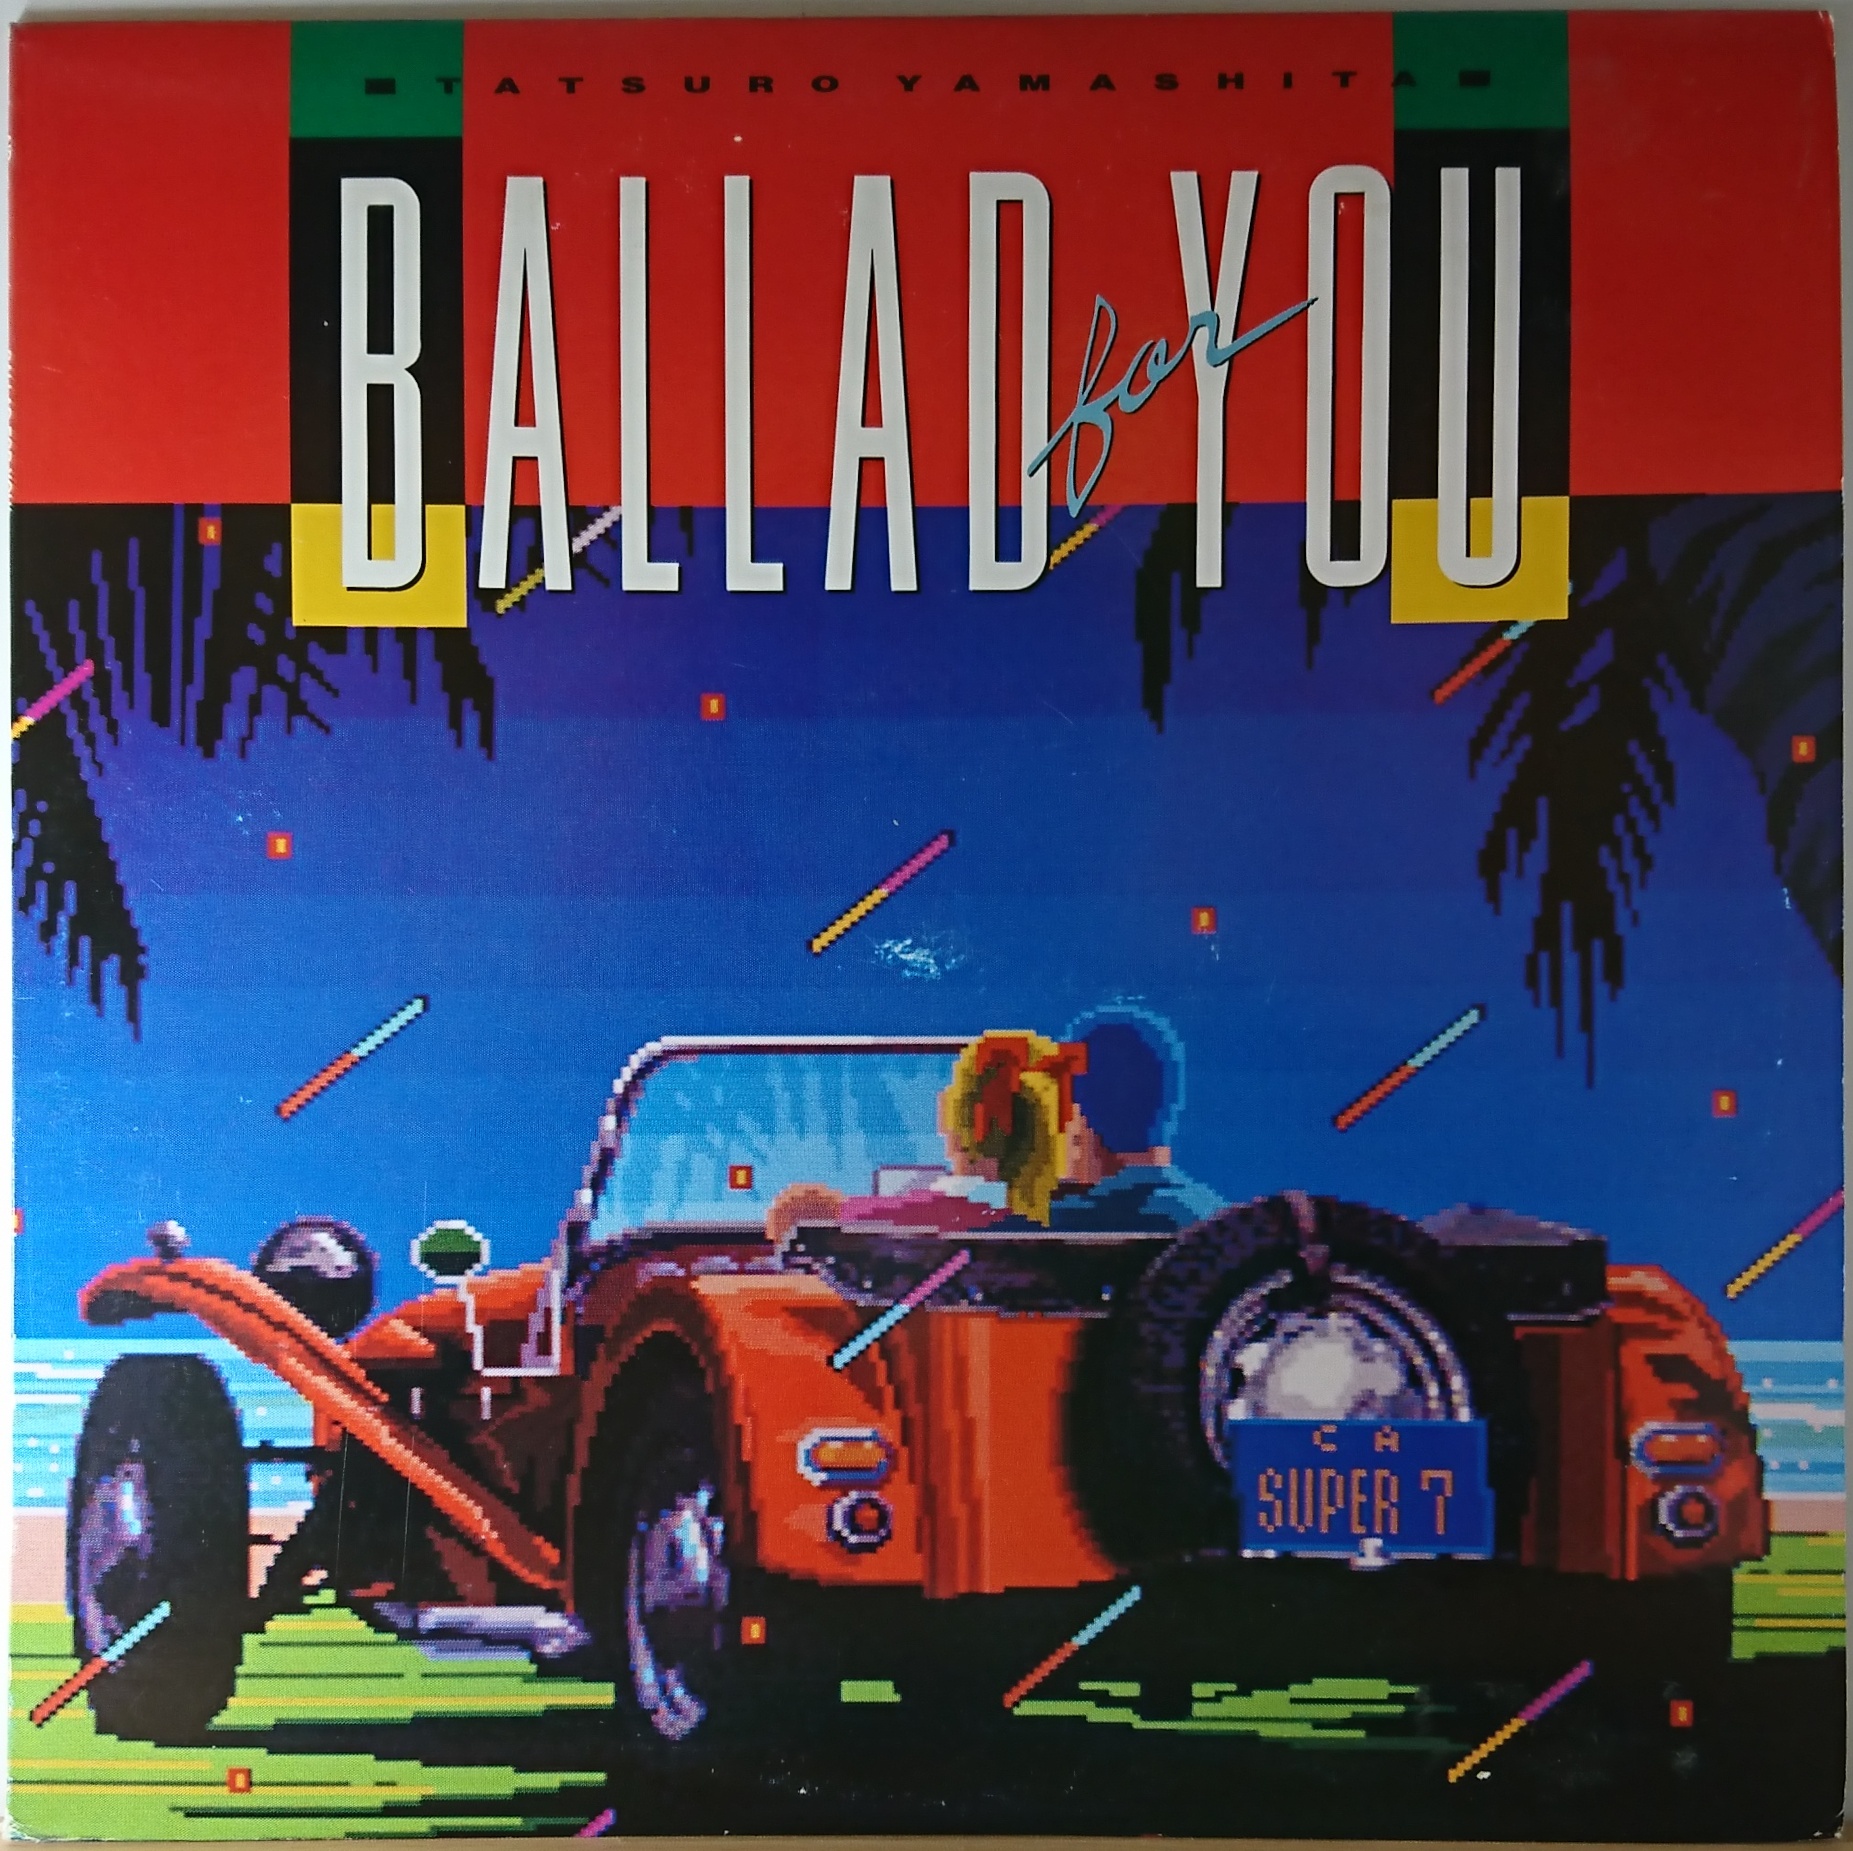 山下達郎 Ballad For You 中古レコード通販・買取のアカル・レコーズ